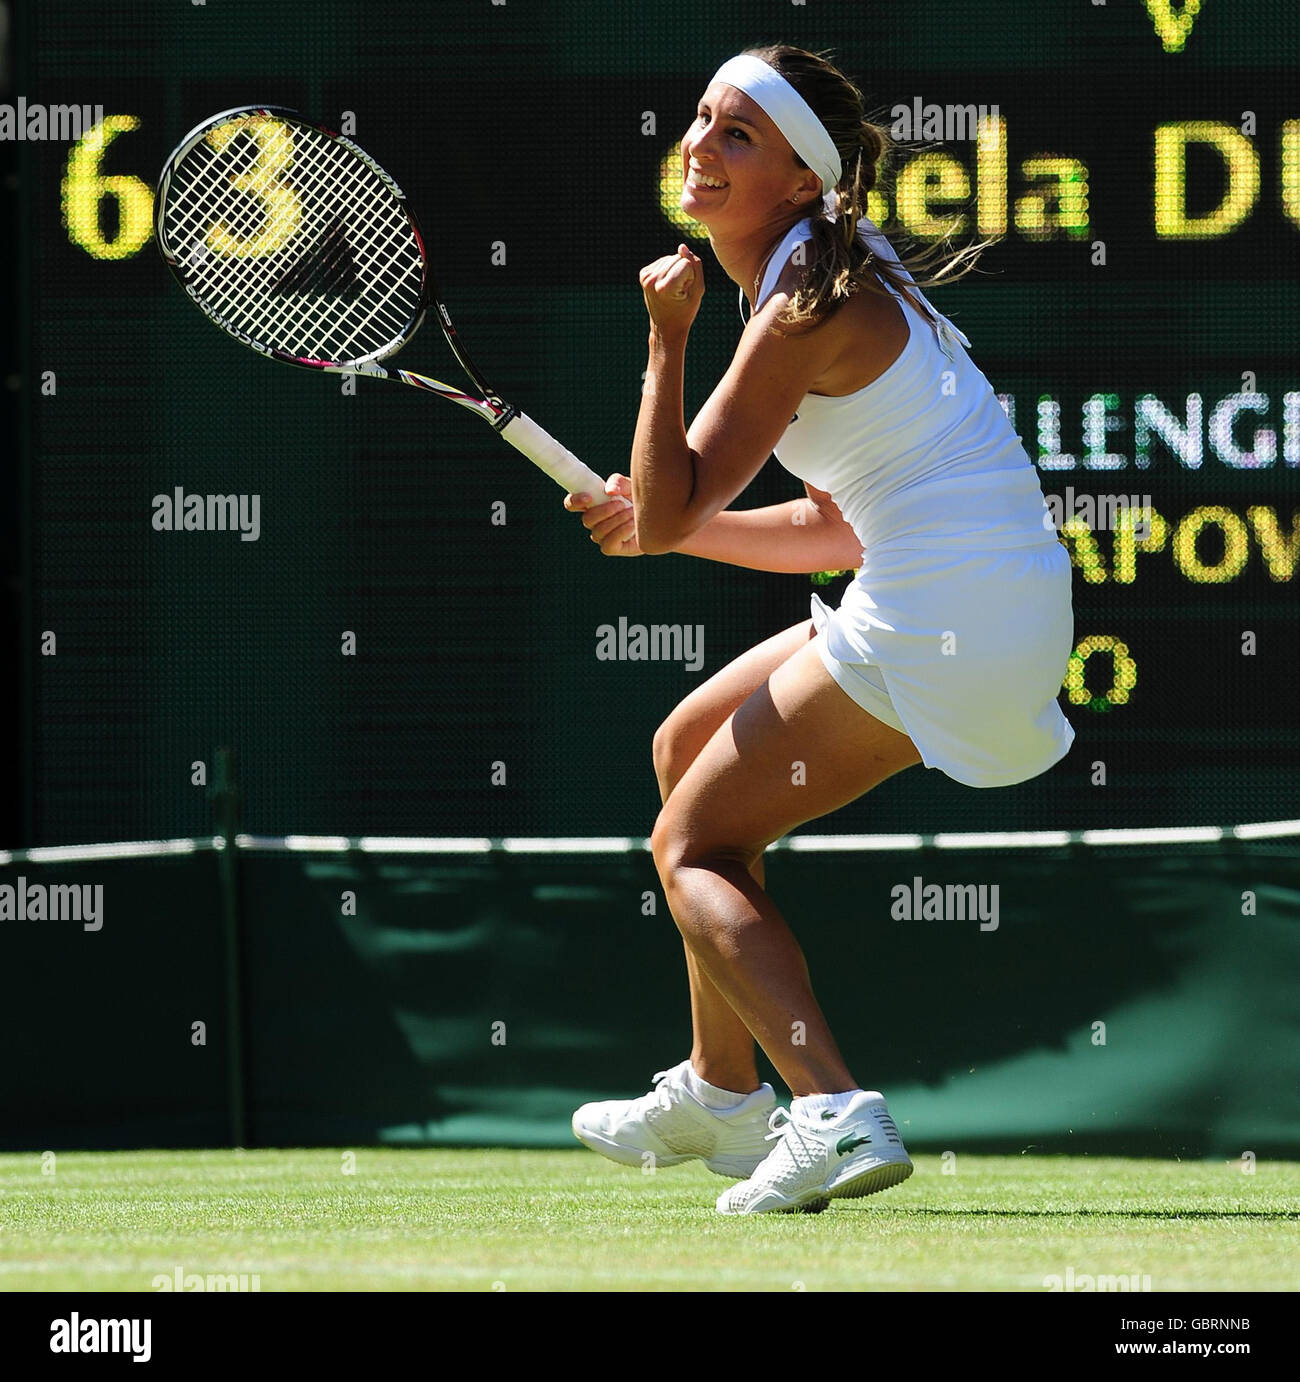 Gisela Dulko en Argentine célèbre sa victoire contre Maria Sharapova en Russie lors des championnats de Wimbledon 2009 au All England Lawn tennis and Croquet Club, Wimbledon, Londres. Banque D'Images